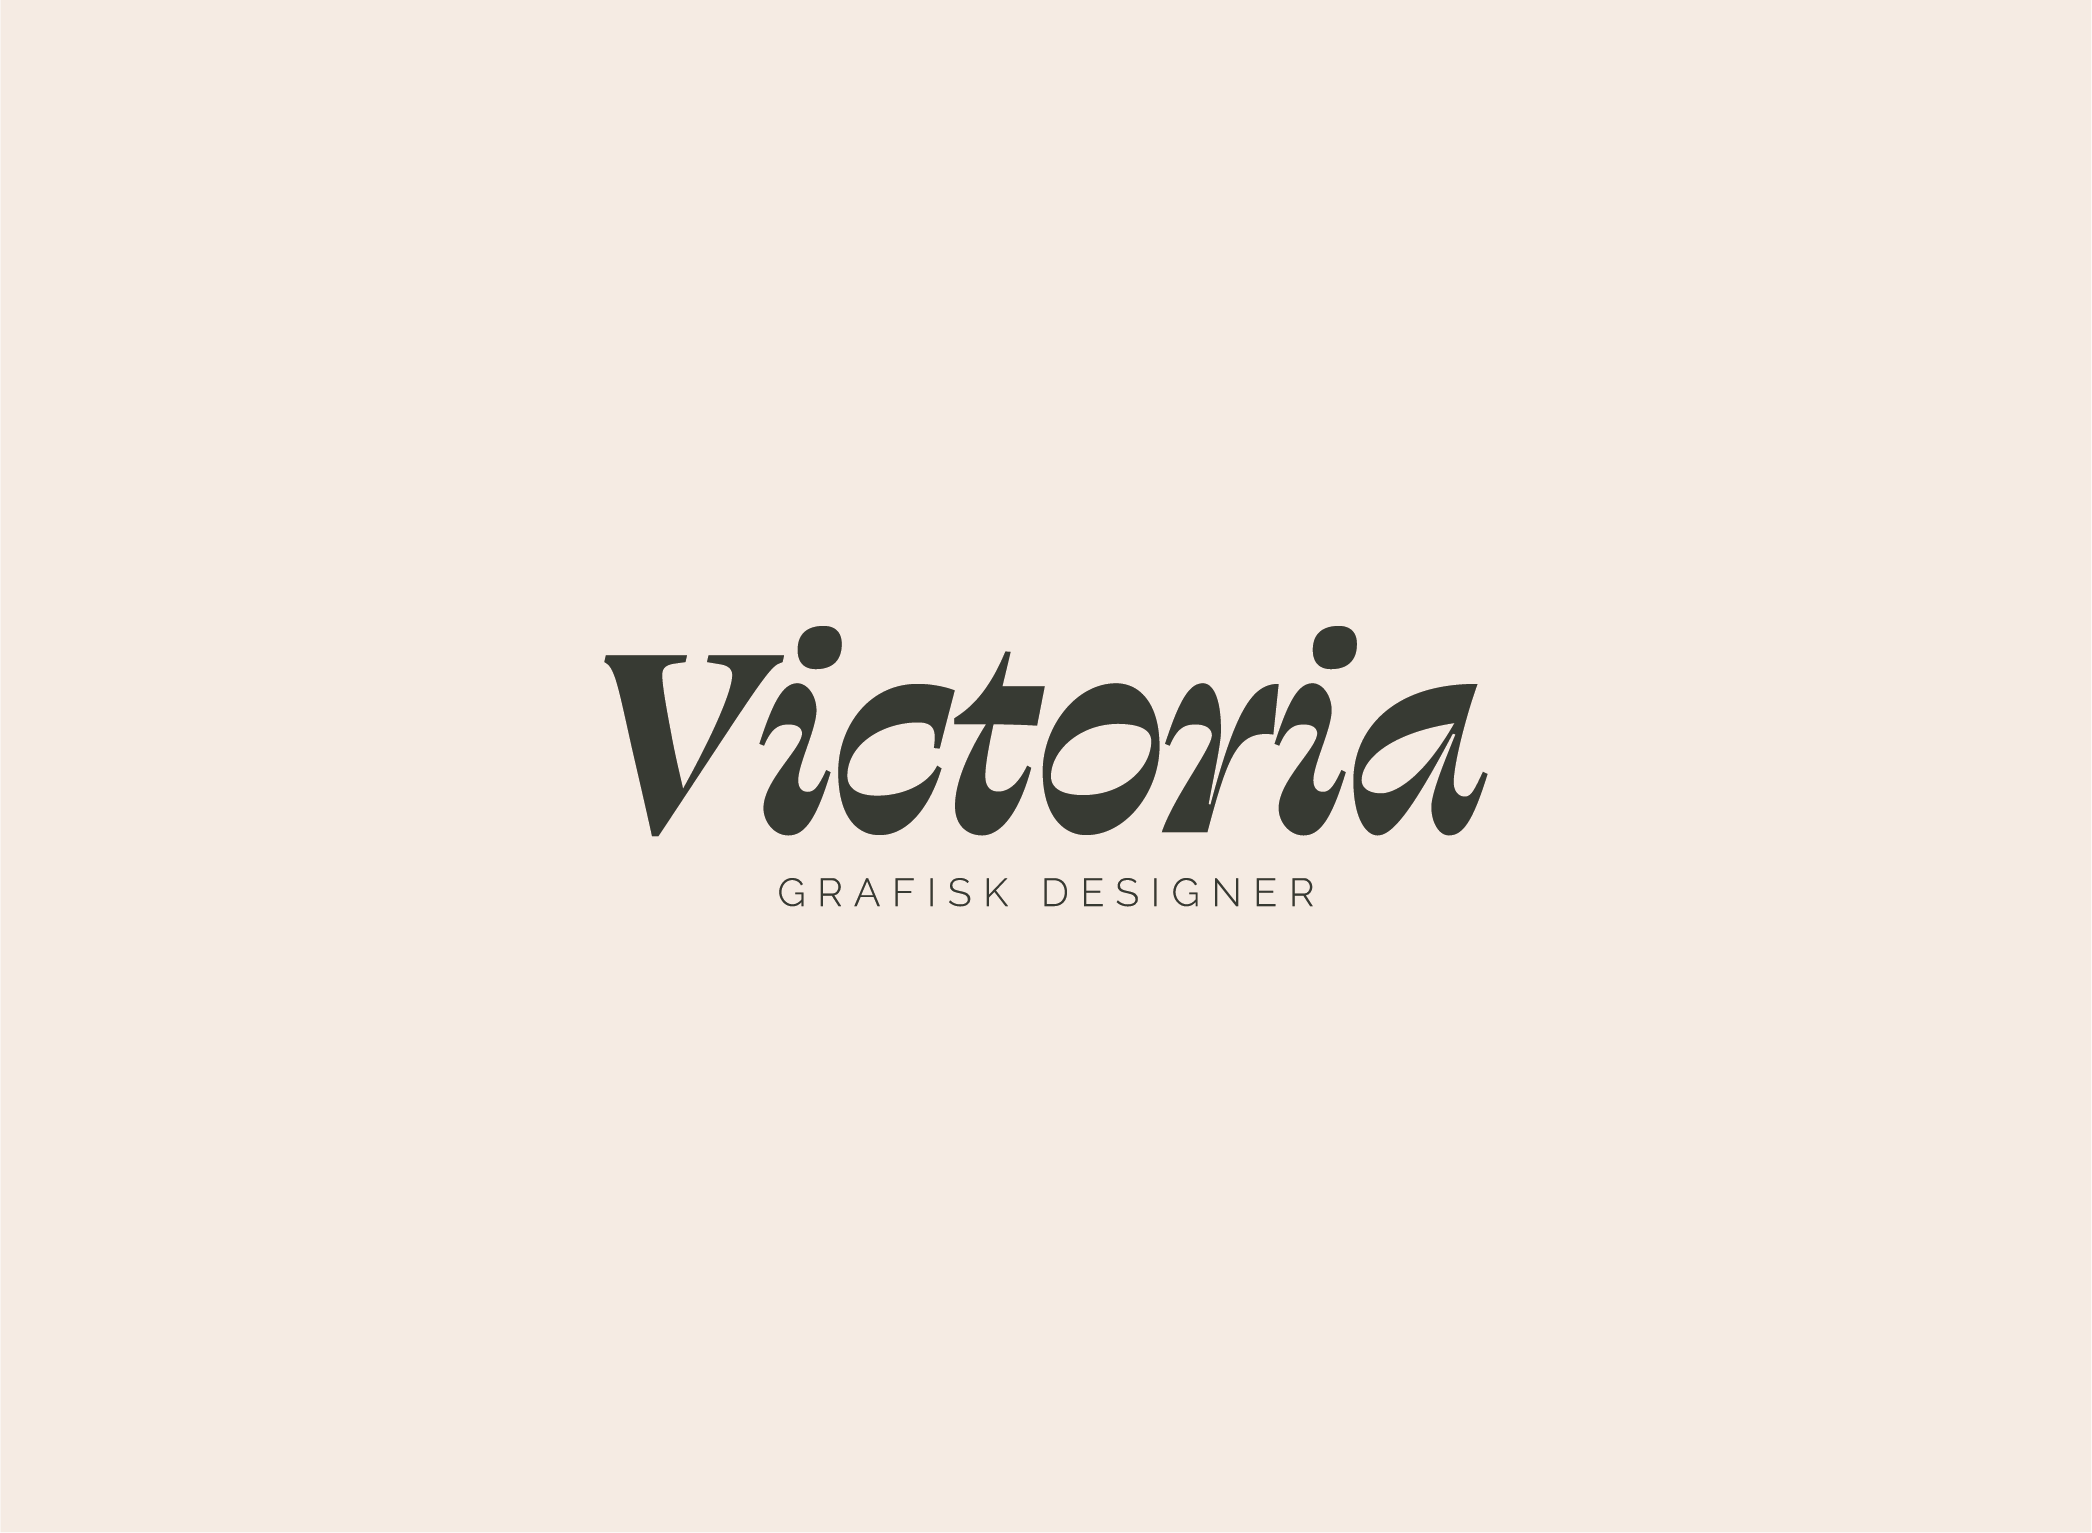 Victoria Eklund Wiklund – Grafisk designer logotyp